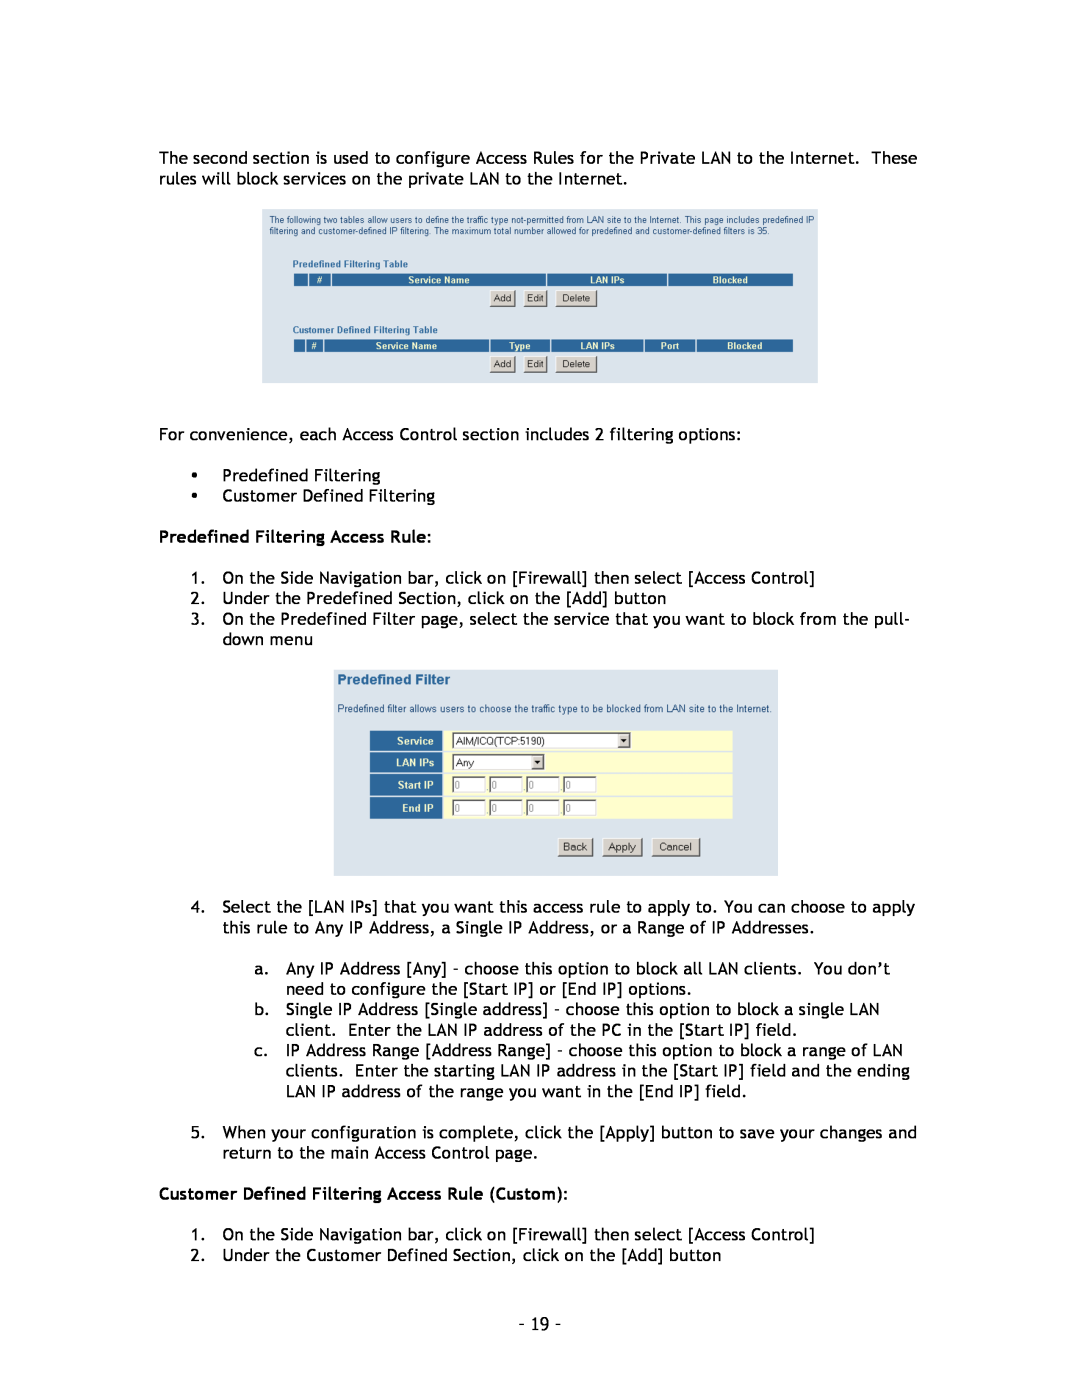 SMC Networks SMC8014 manual Predefined Filtering Access Rule, Customer Defined Filtering Access Rule Custom 